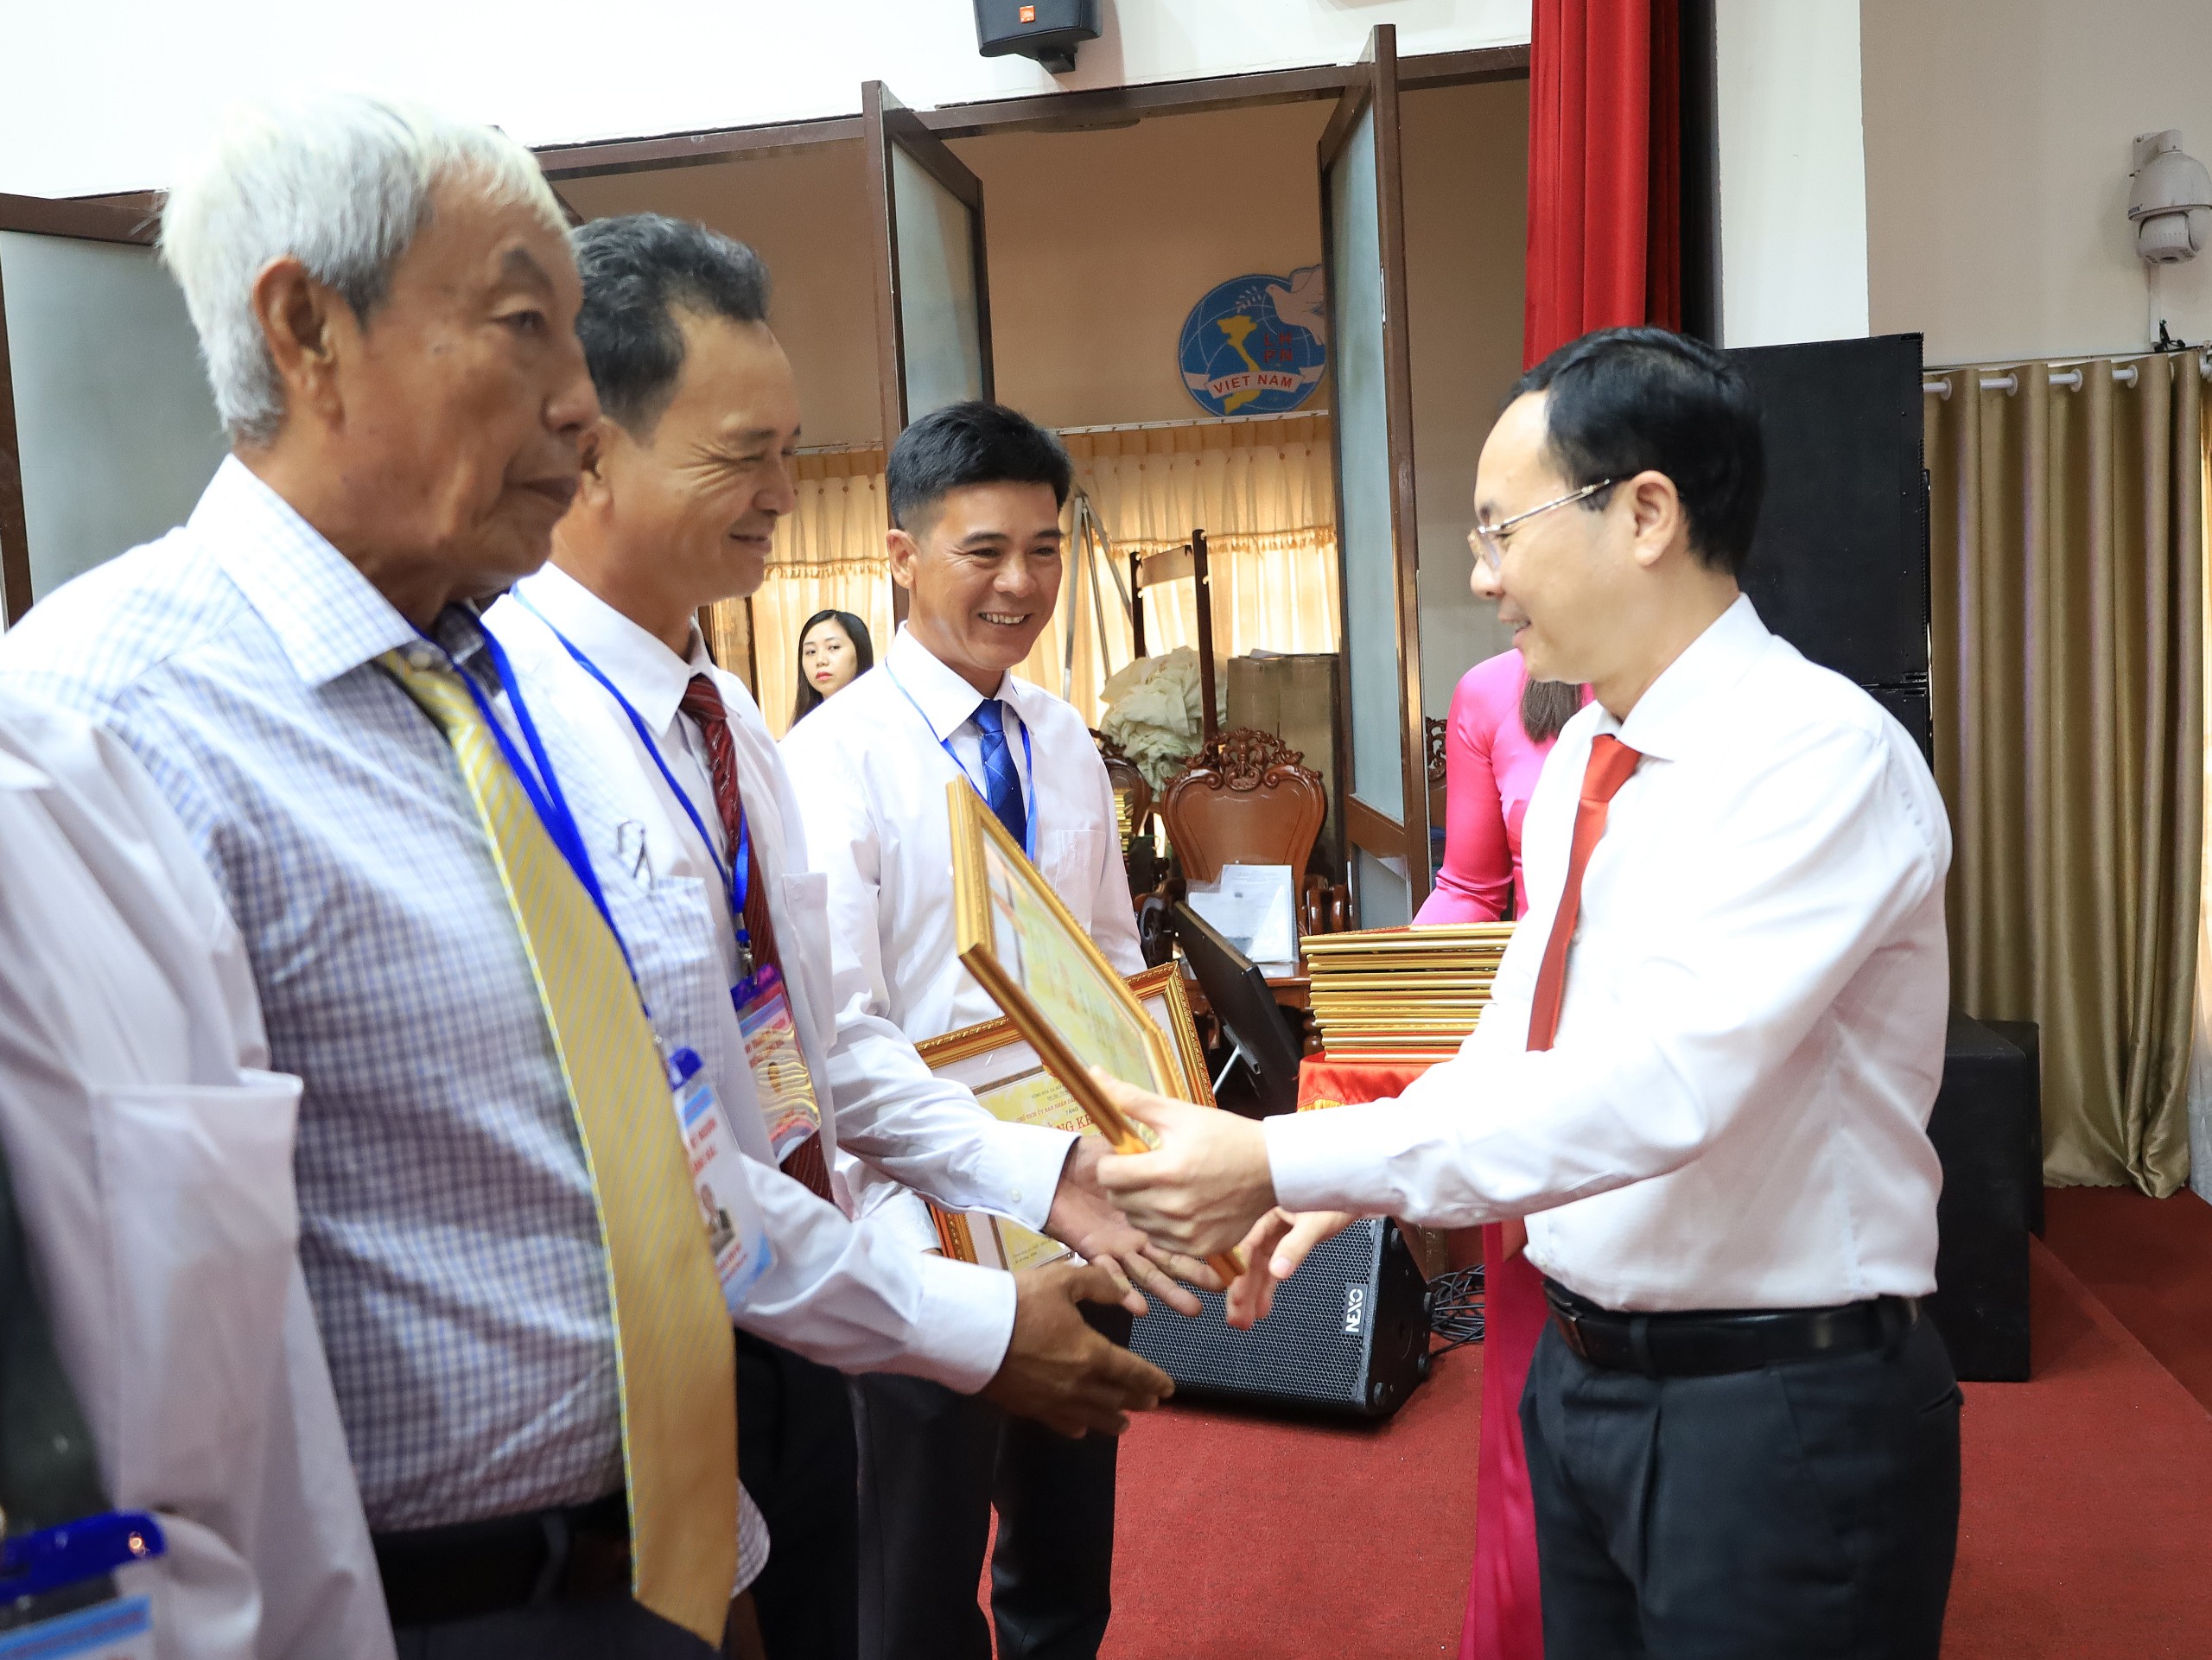 Ông Nguyễn Văn Hiếu - Ủy viên dự khuyết BCH Trung ương Đảng, Bí thư Thành ủy Cần Thơ trao tặng bằng khen cho các gương điển hình.